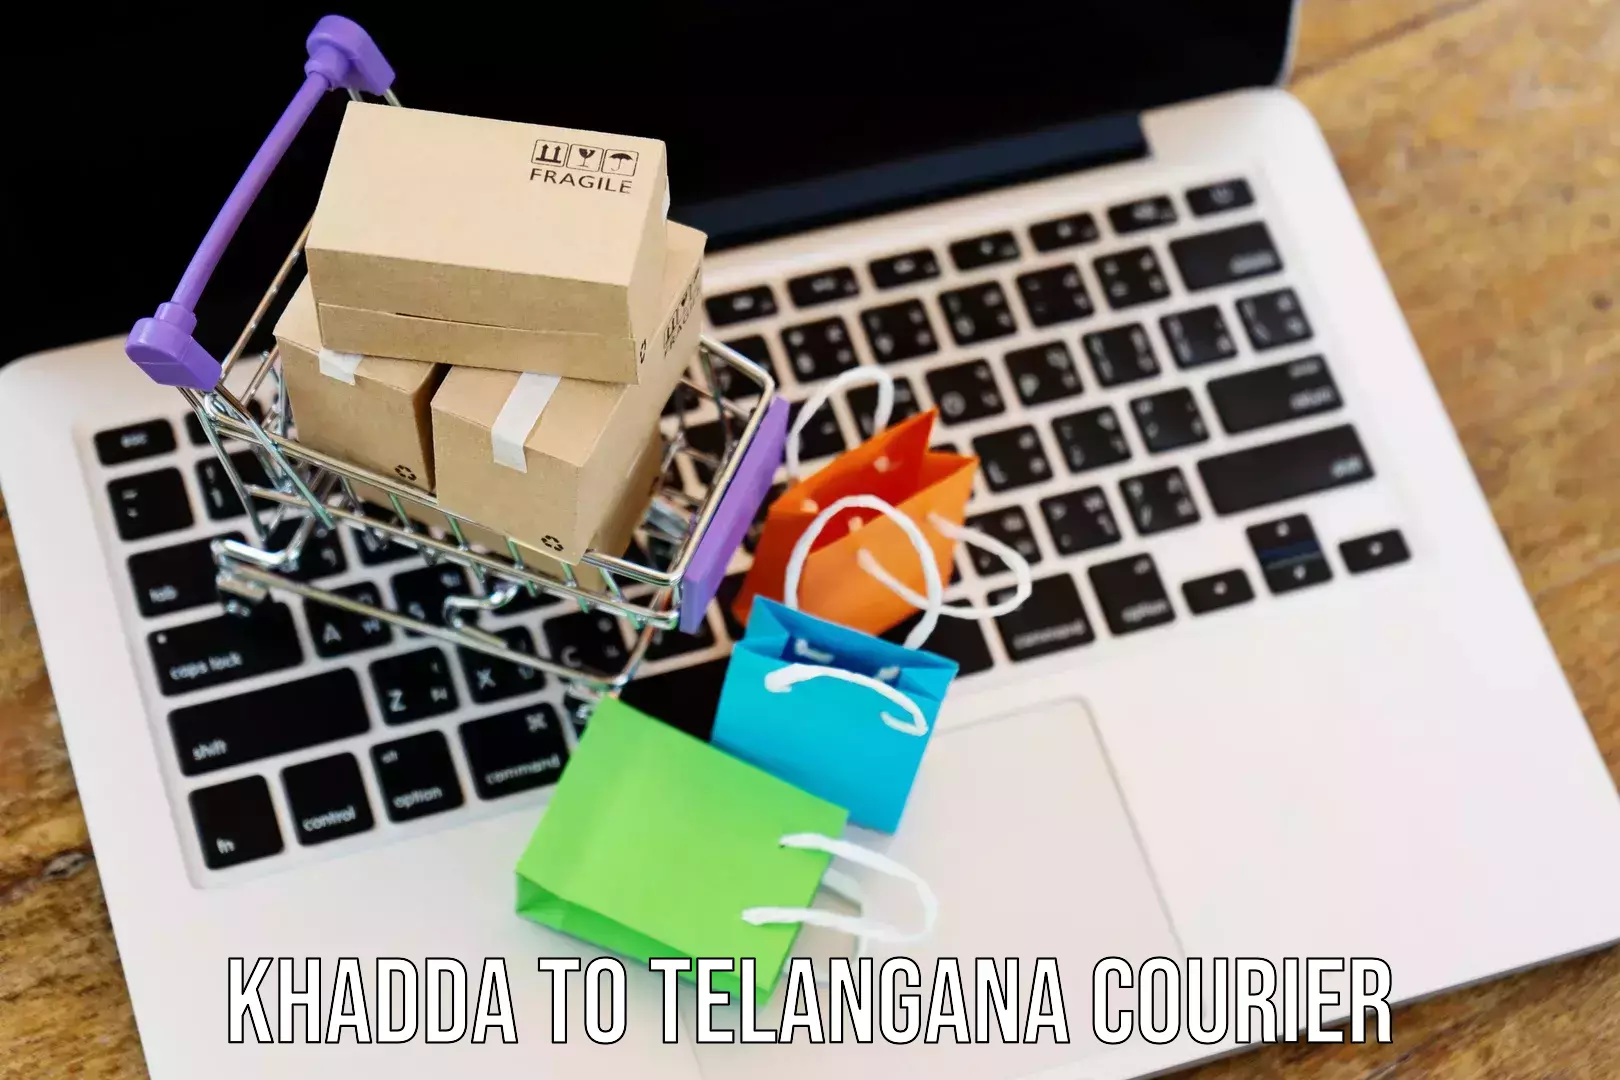 Enhanced tracking features Khadda to Bhainsa